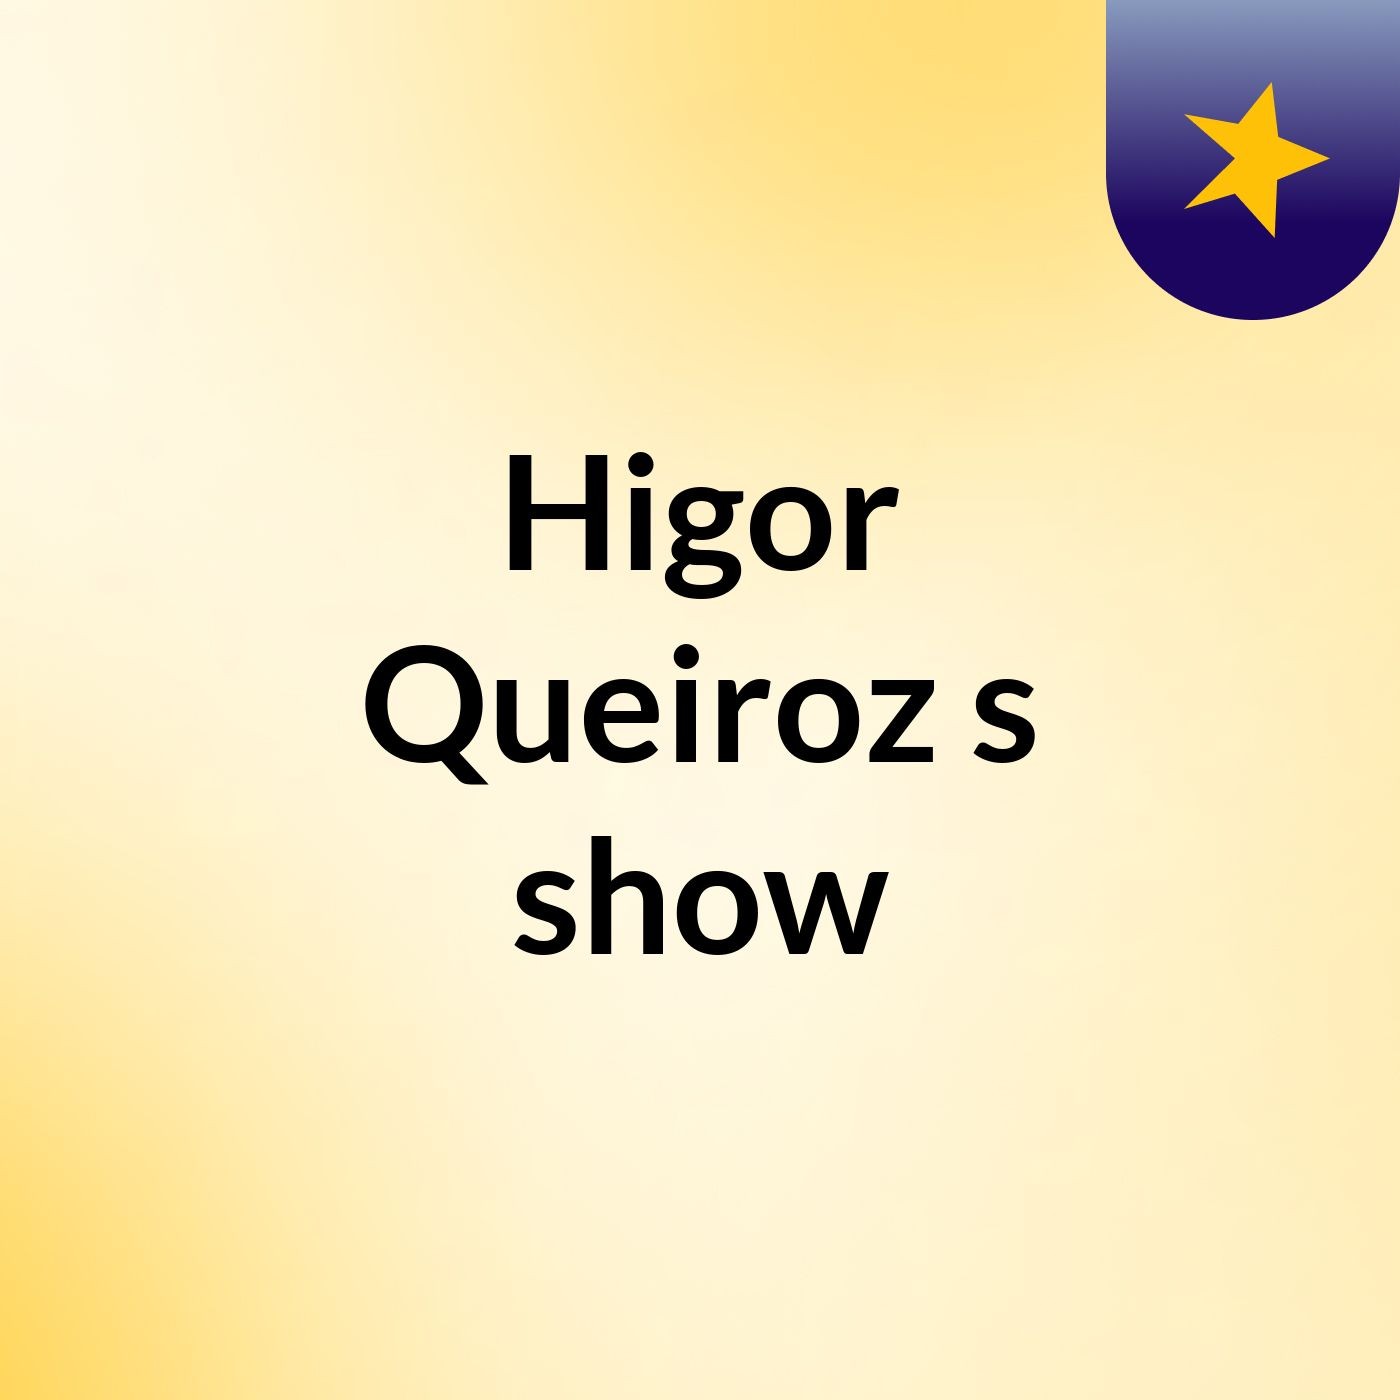 Higor Queiroz's show